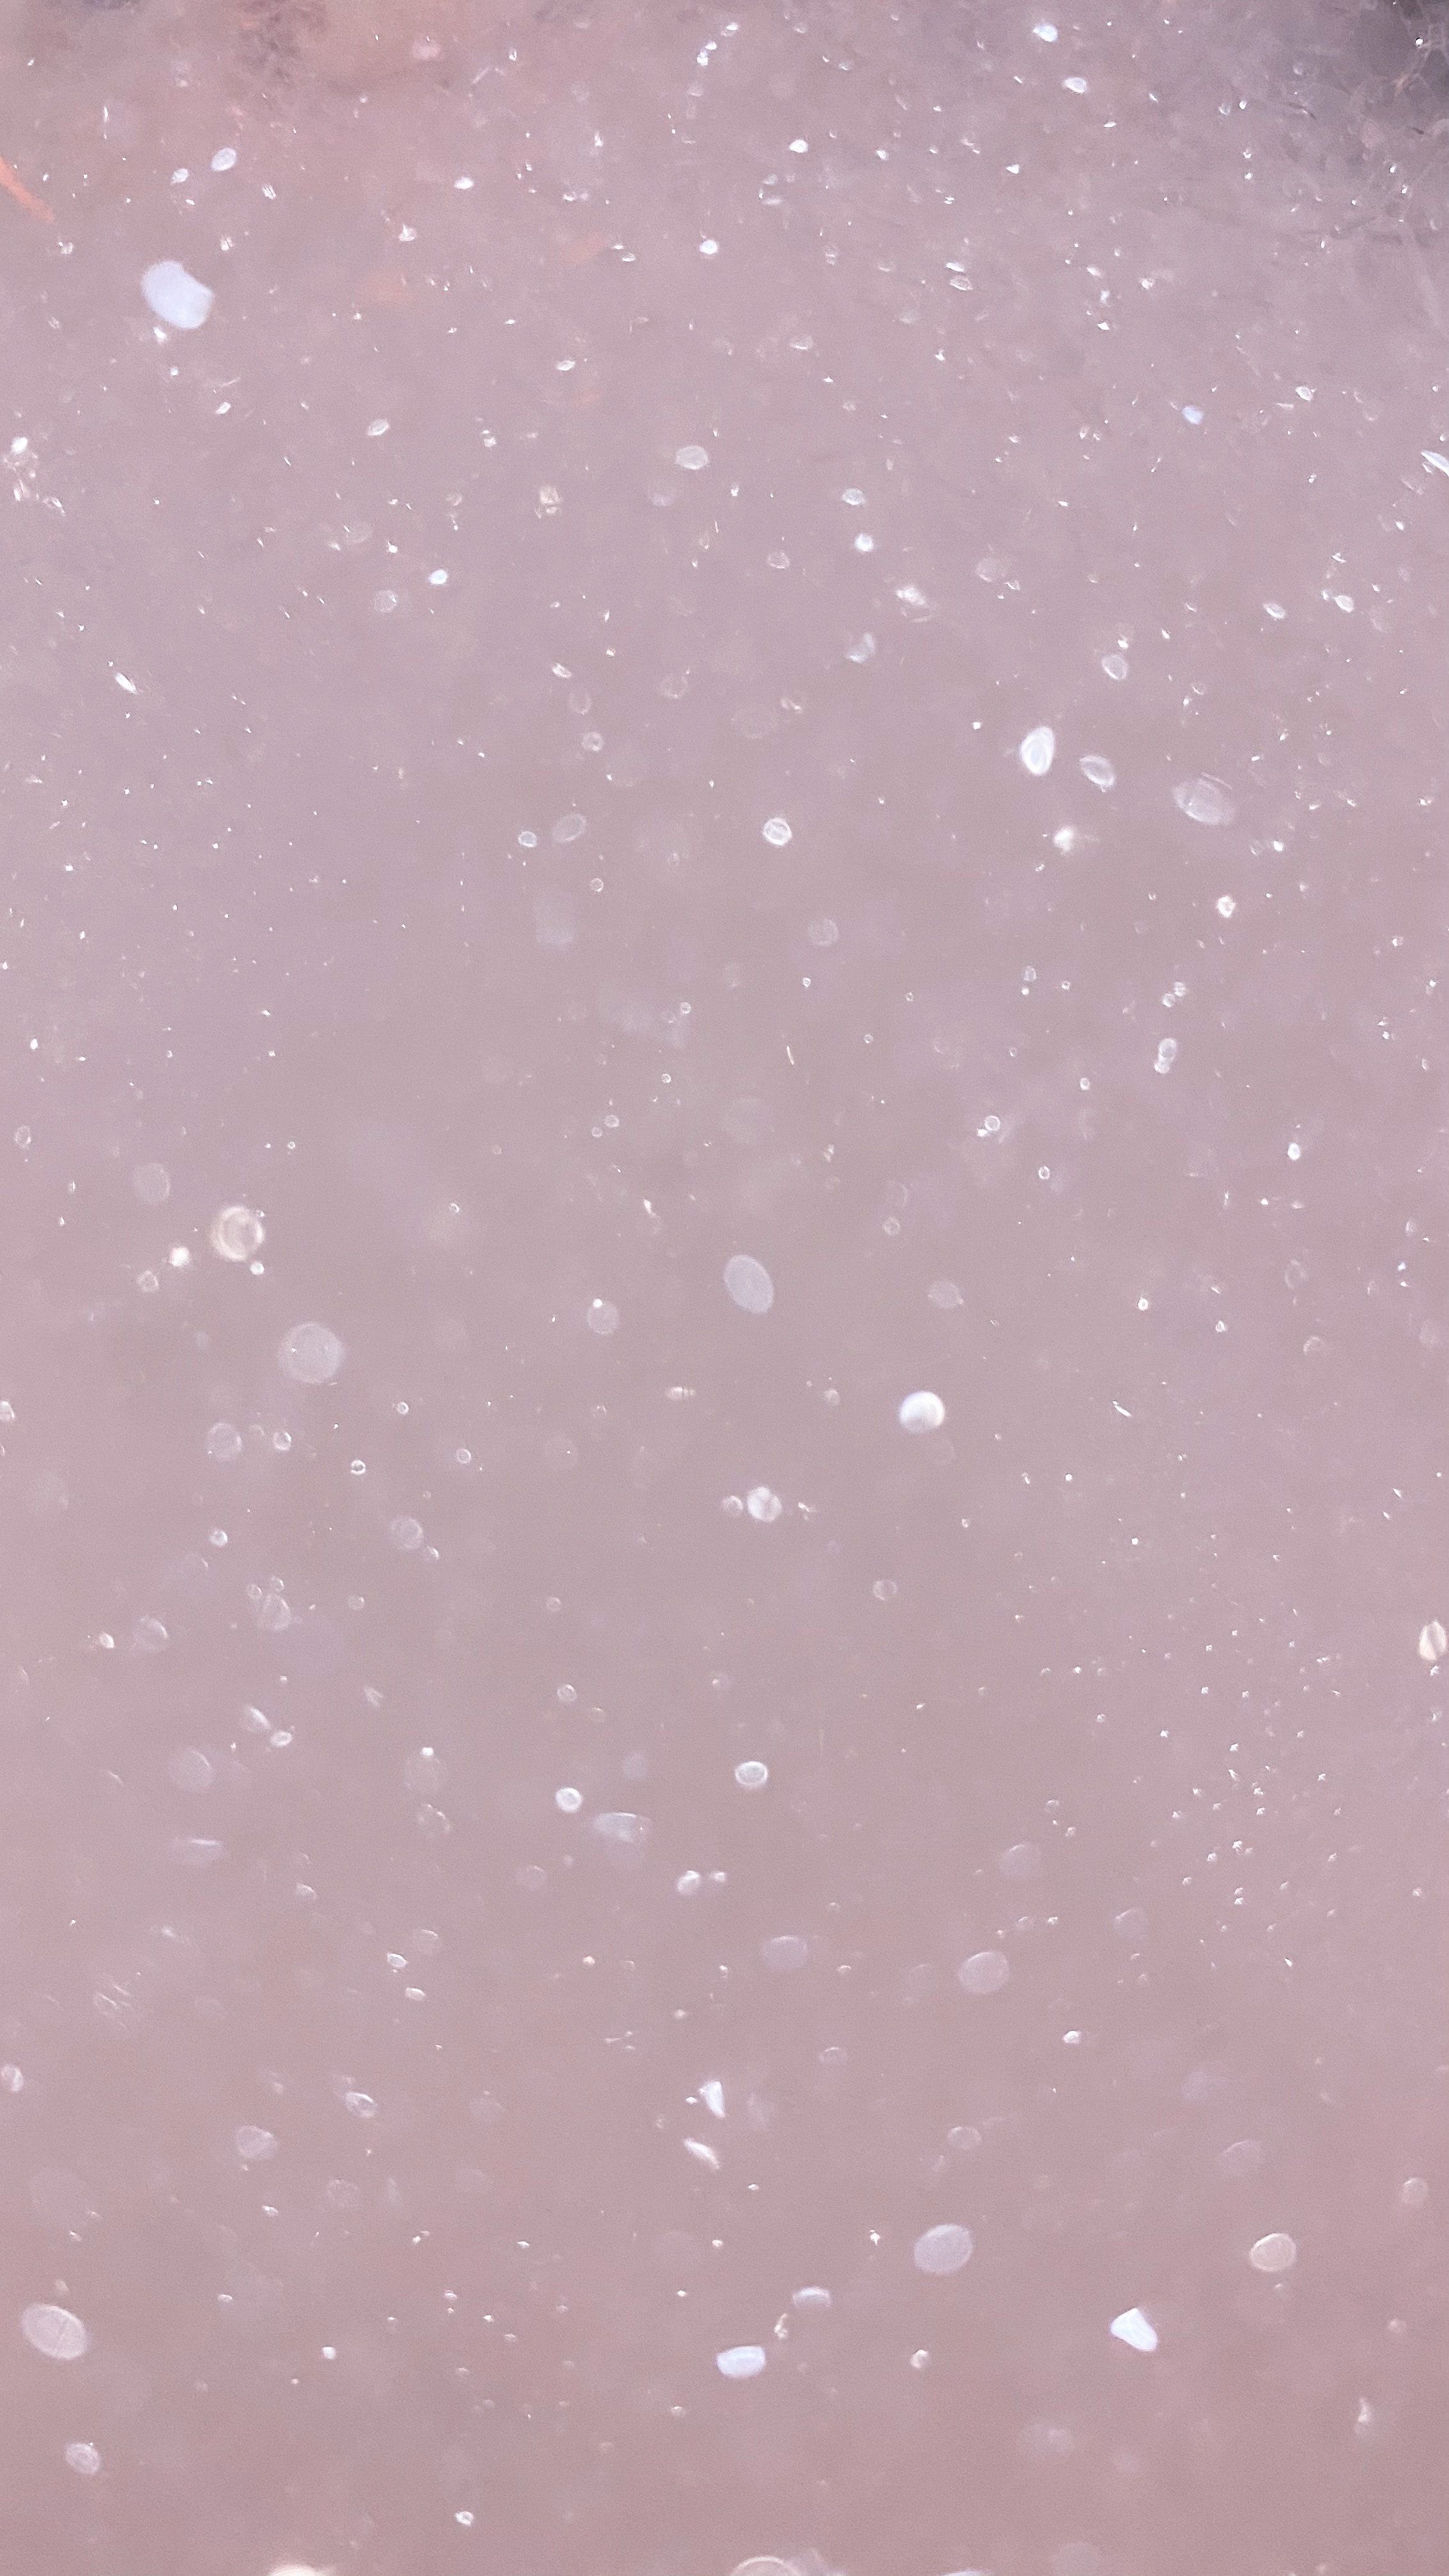  Glitzer Schwarz Hintergrundbild 2268x4032. Kostenloses Foto zum Thema: abstrakt, blasen, blowing bubbles, funkeln, glitzer hintergrund, glitzertapete, hintergrund, luftblasen, muster, pink, seifenblasen, textur, wallpaper